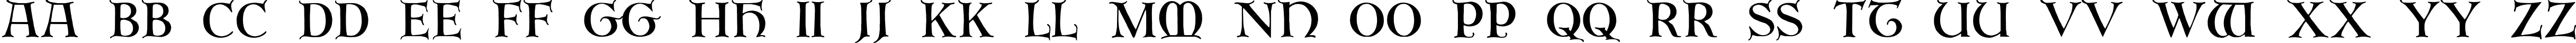 Пример написания английского алфавита шрифтом Erbar Initialen Regular